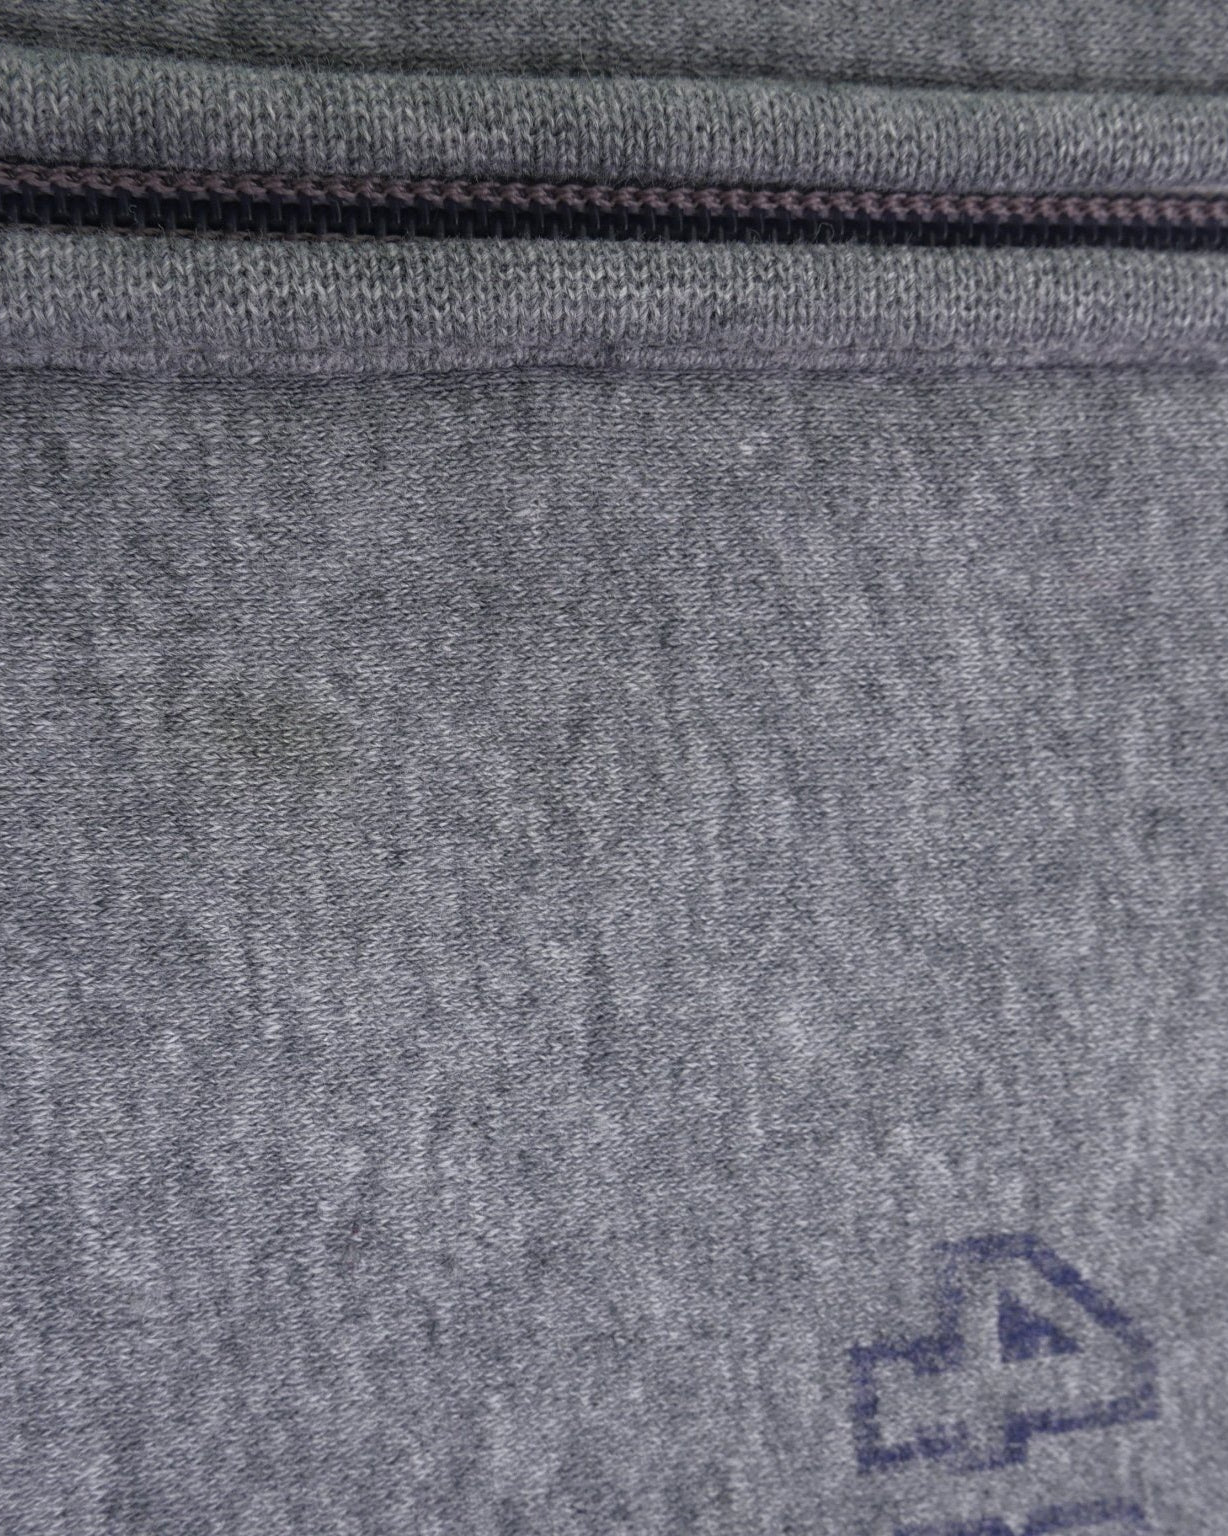 puma printed Spellout grey Zip Hoodie - Peeces